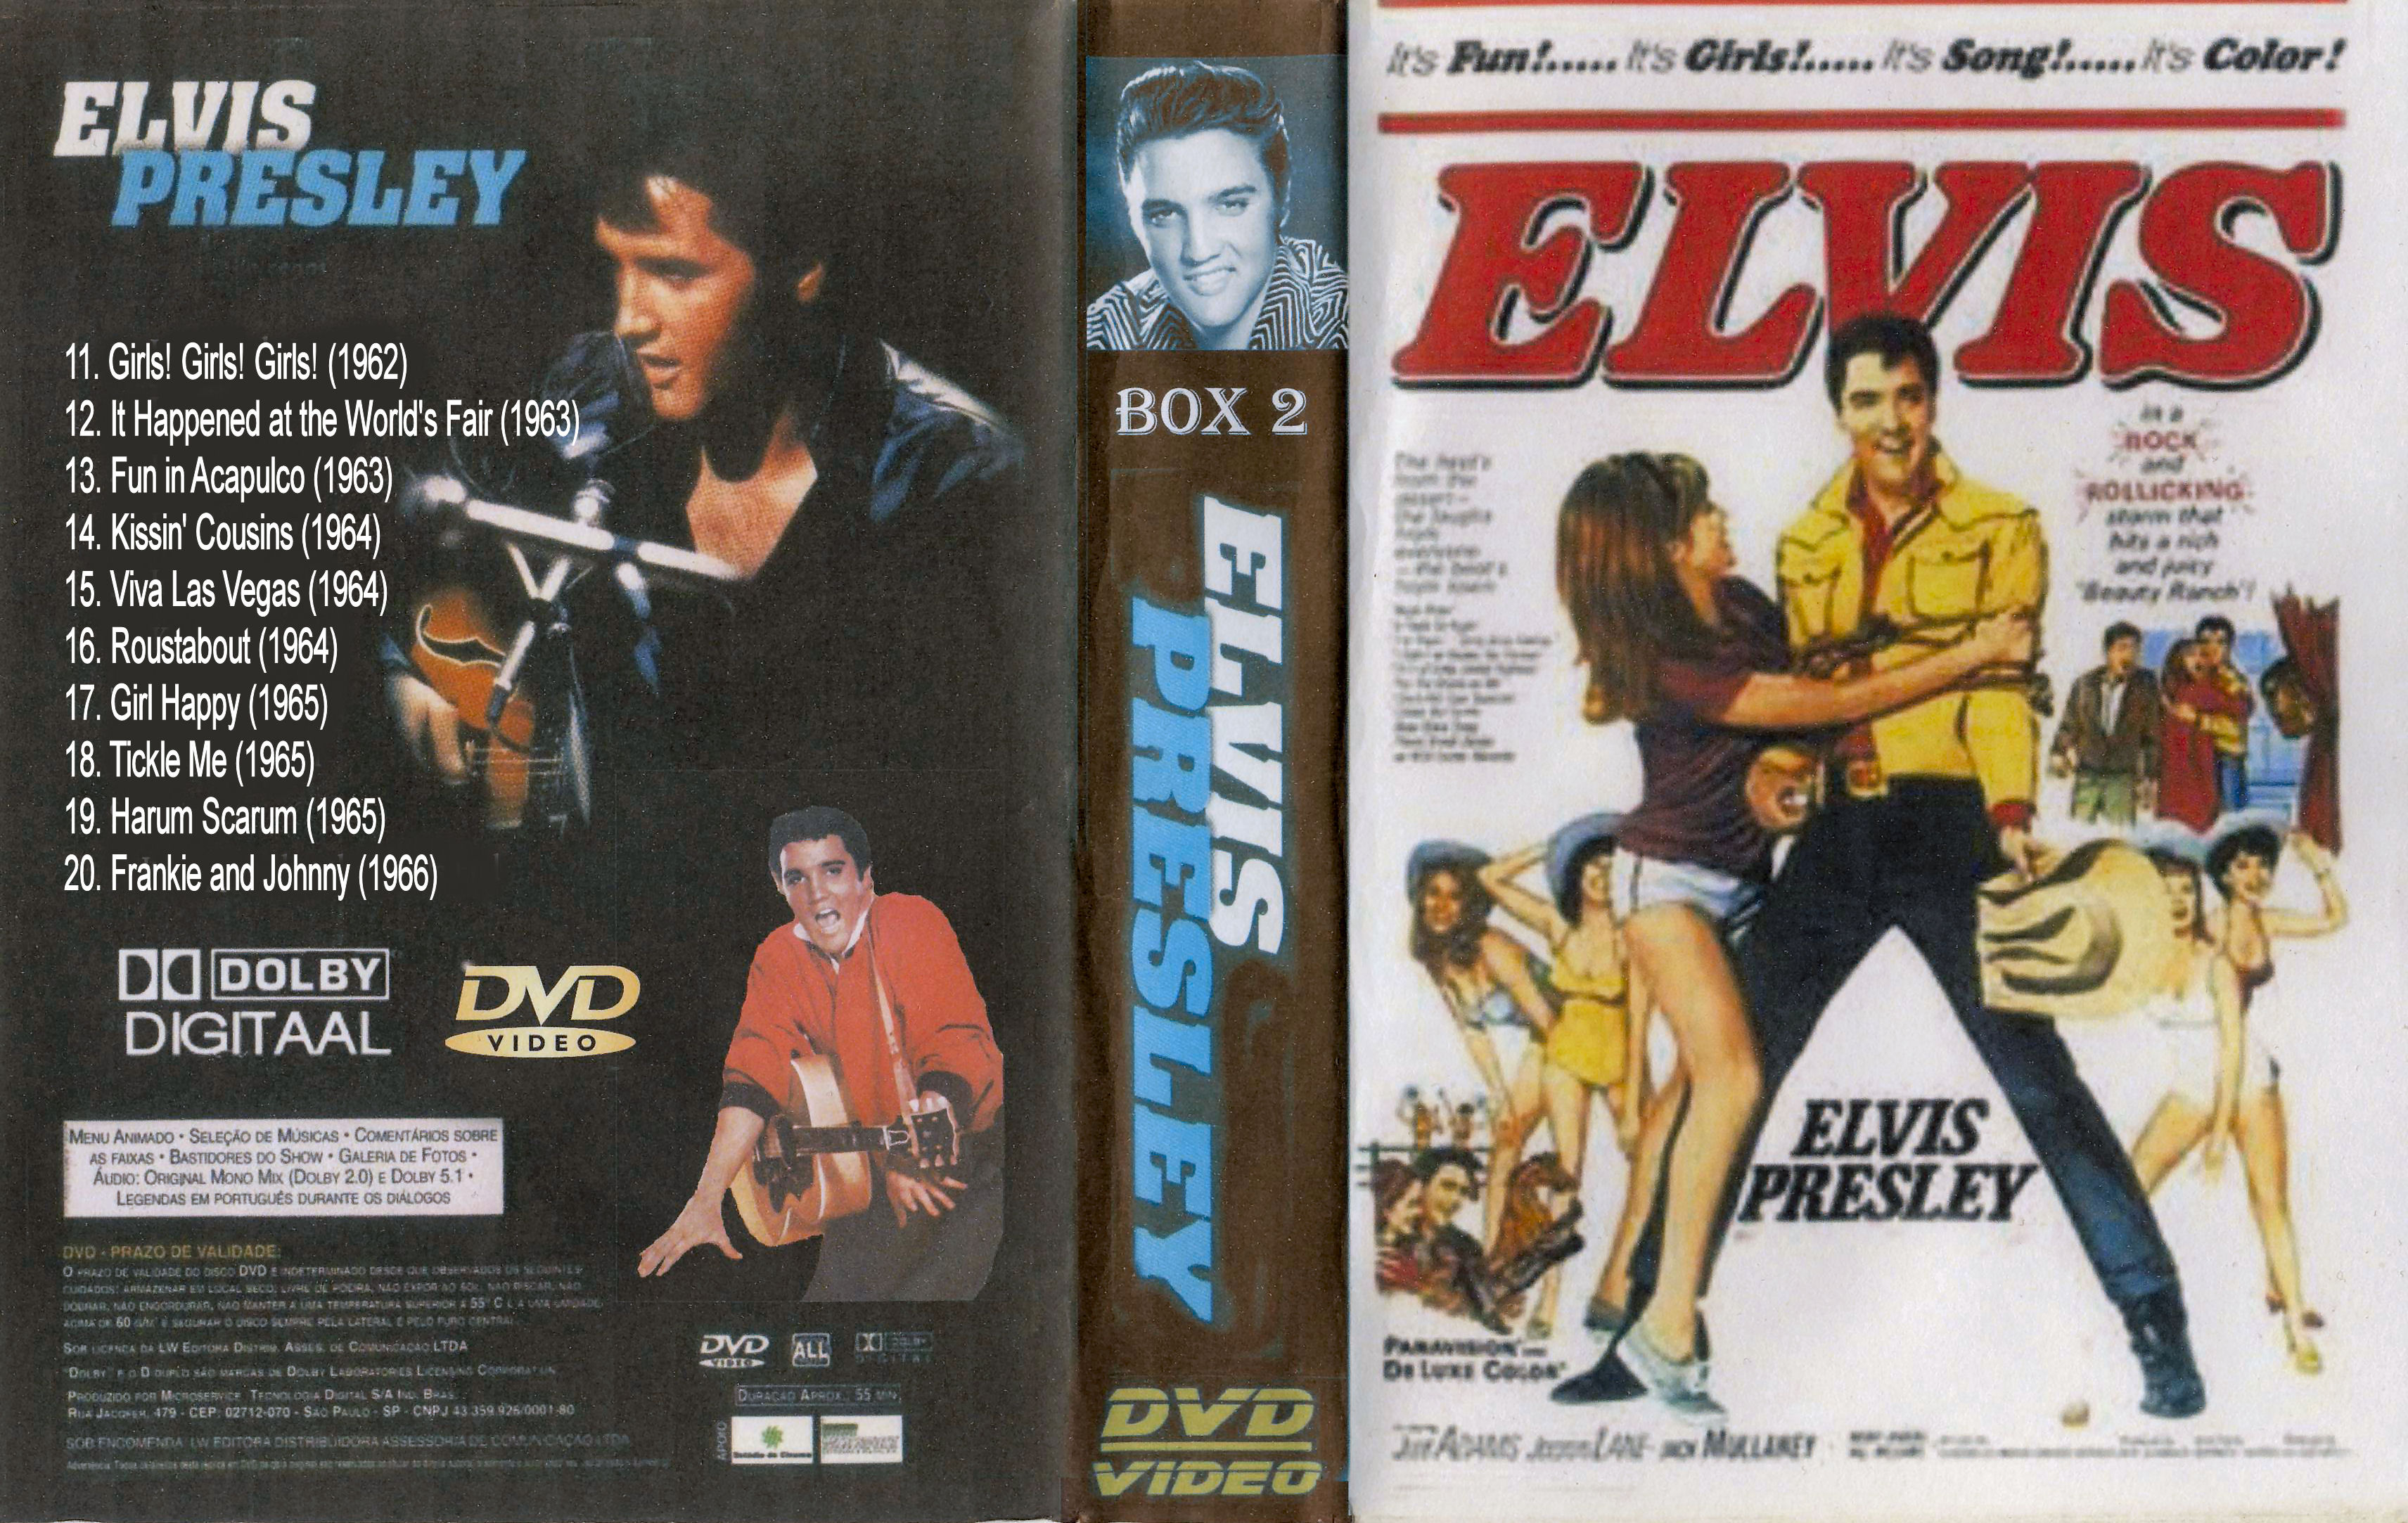 Elvis Presley Collectie ( 16. Roustabout (1964) DvD 16 van 31